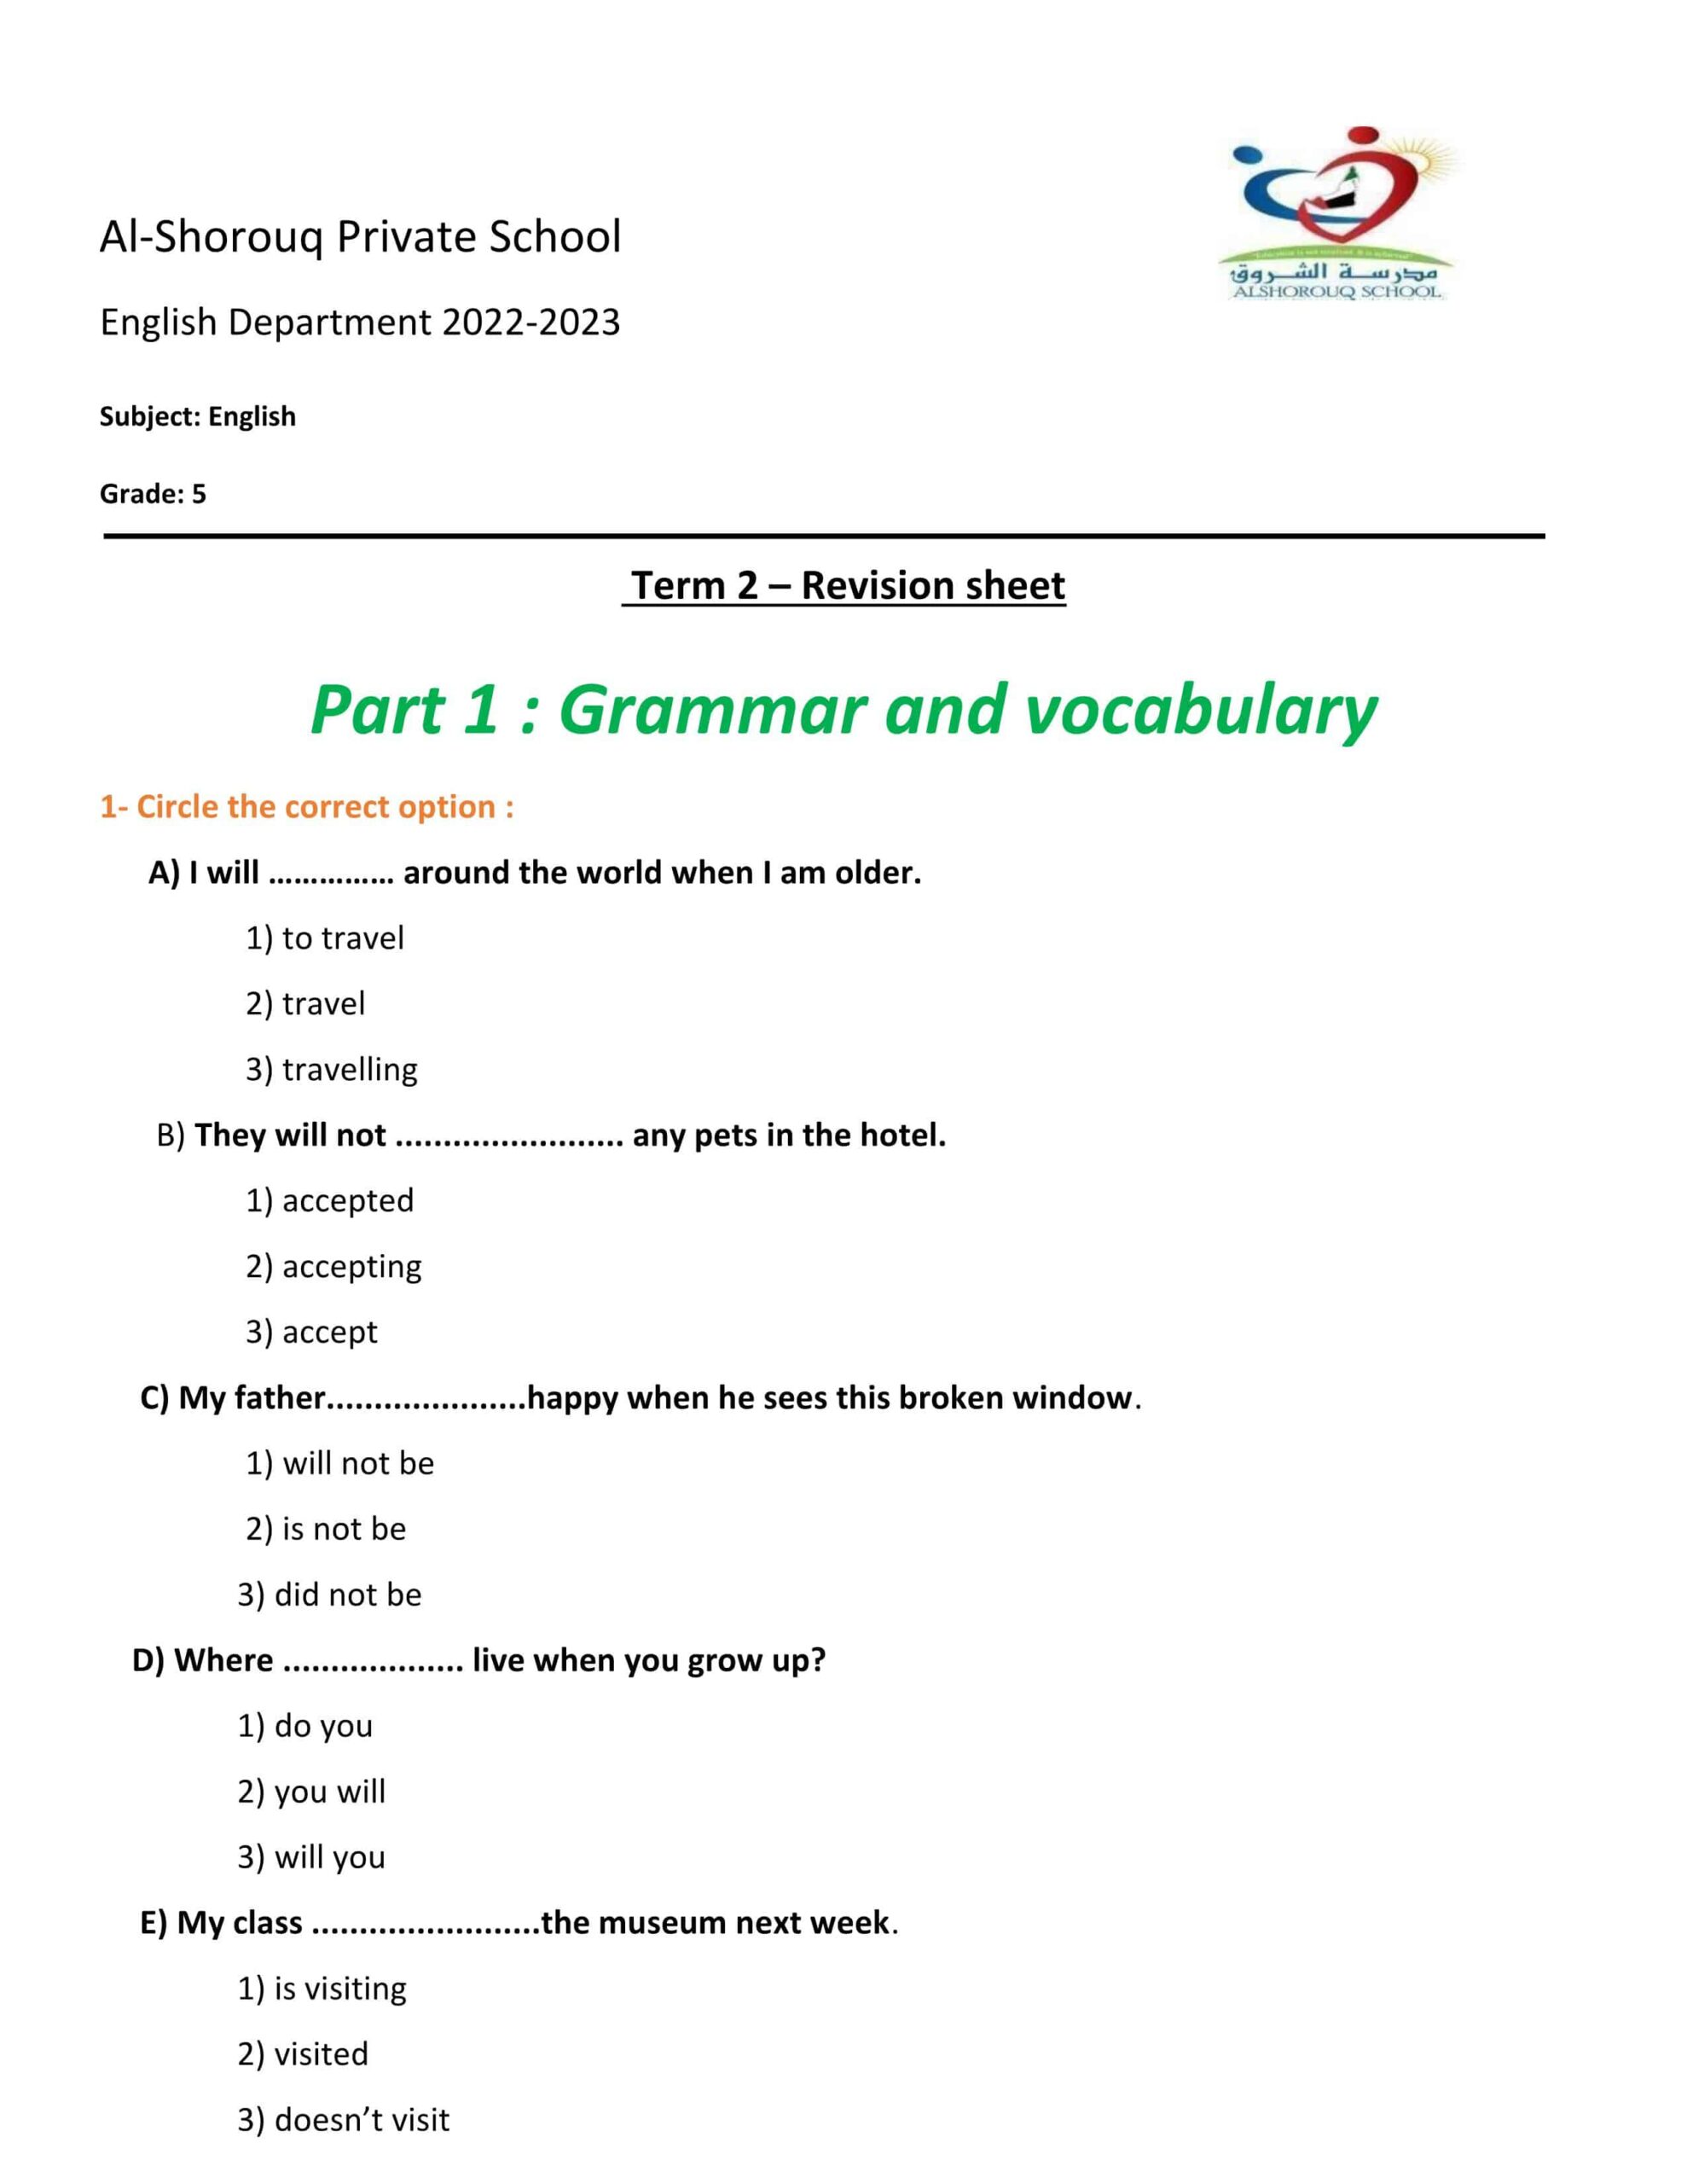 أوراق عمل Revision sheet اللغة الإنجليزية الصف الخامس